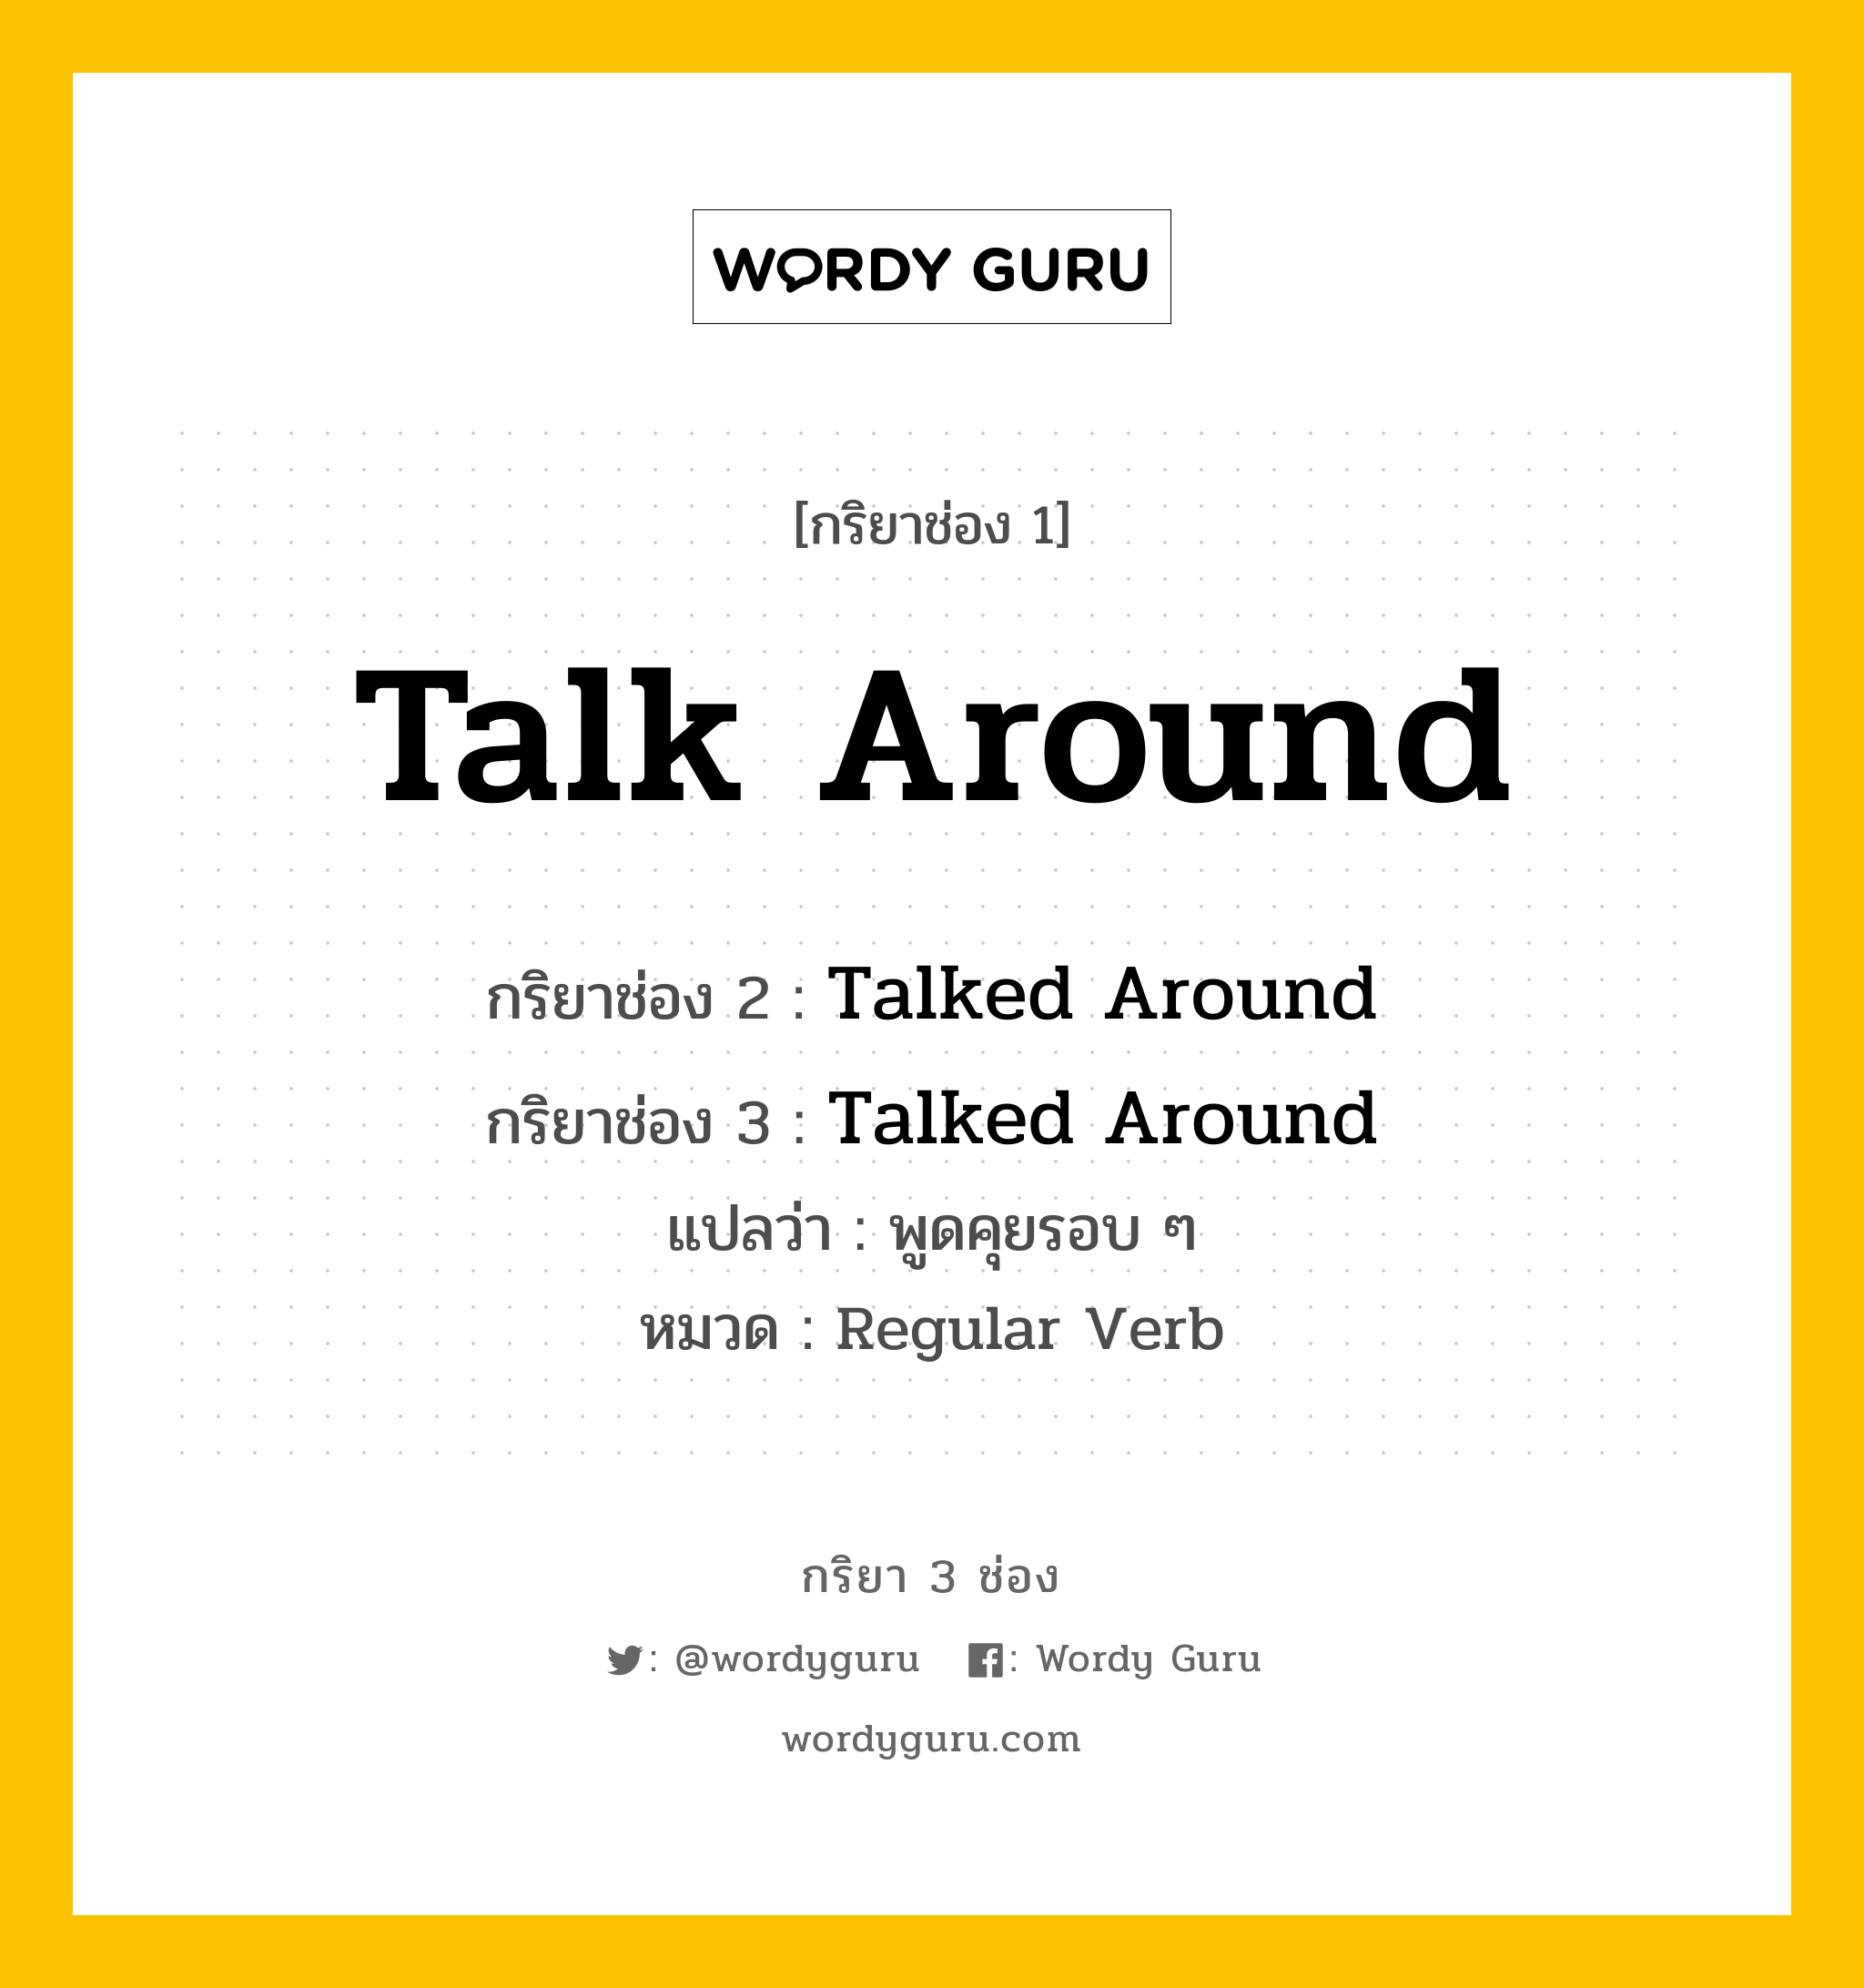 กริยา 3 ช่อง ของ Talk Around คืออะไร? มาดูคำอ่าน คำแปลกันเลย, กริยาช่อง 1 Talk Around กริยาช่อง 2 Talked Around กริยาช่อง 3 Talked Around แปลว่า พูดคุยรอบ ๆ หมวด Regular Verb หมวด Regular Verb